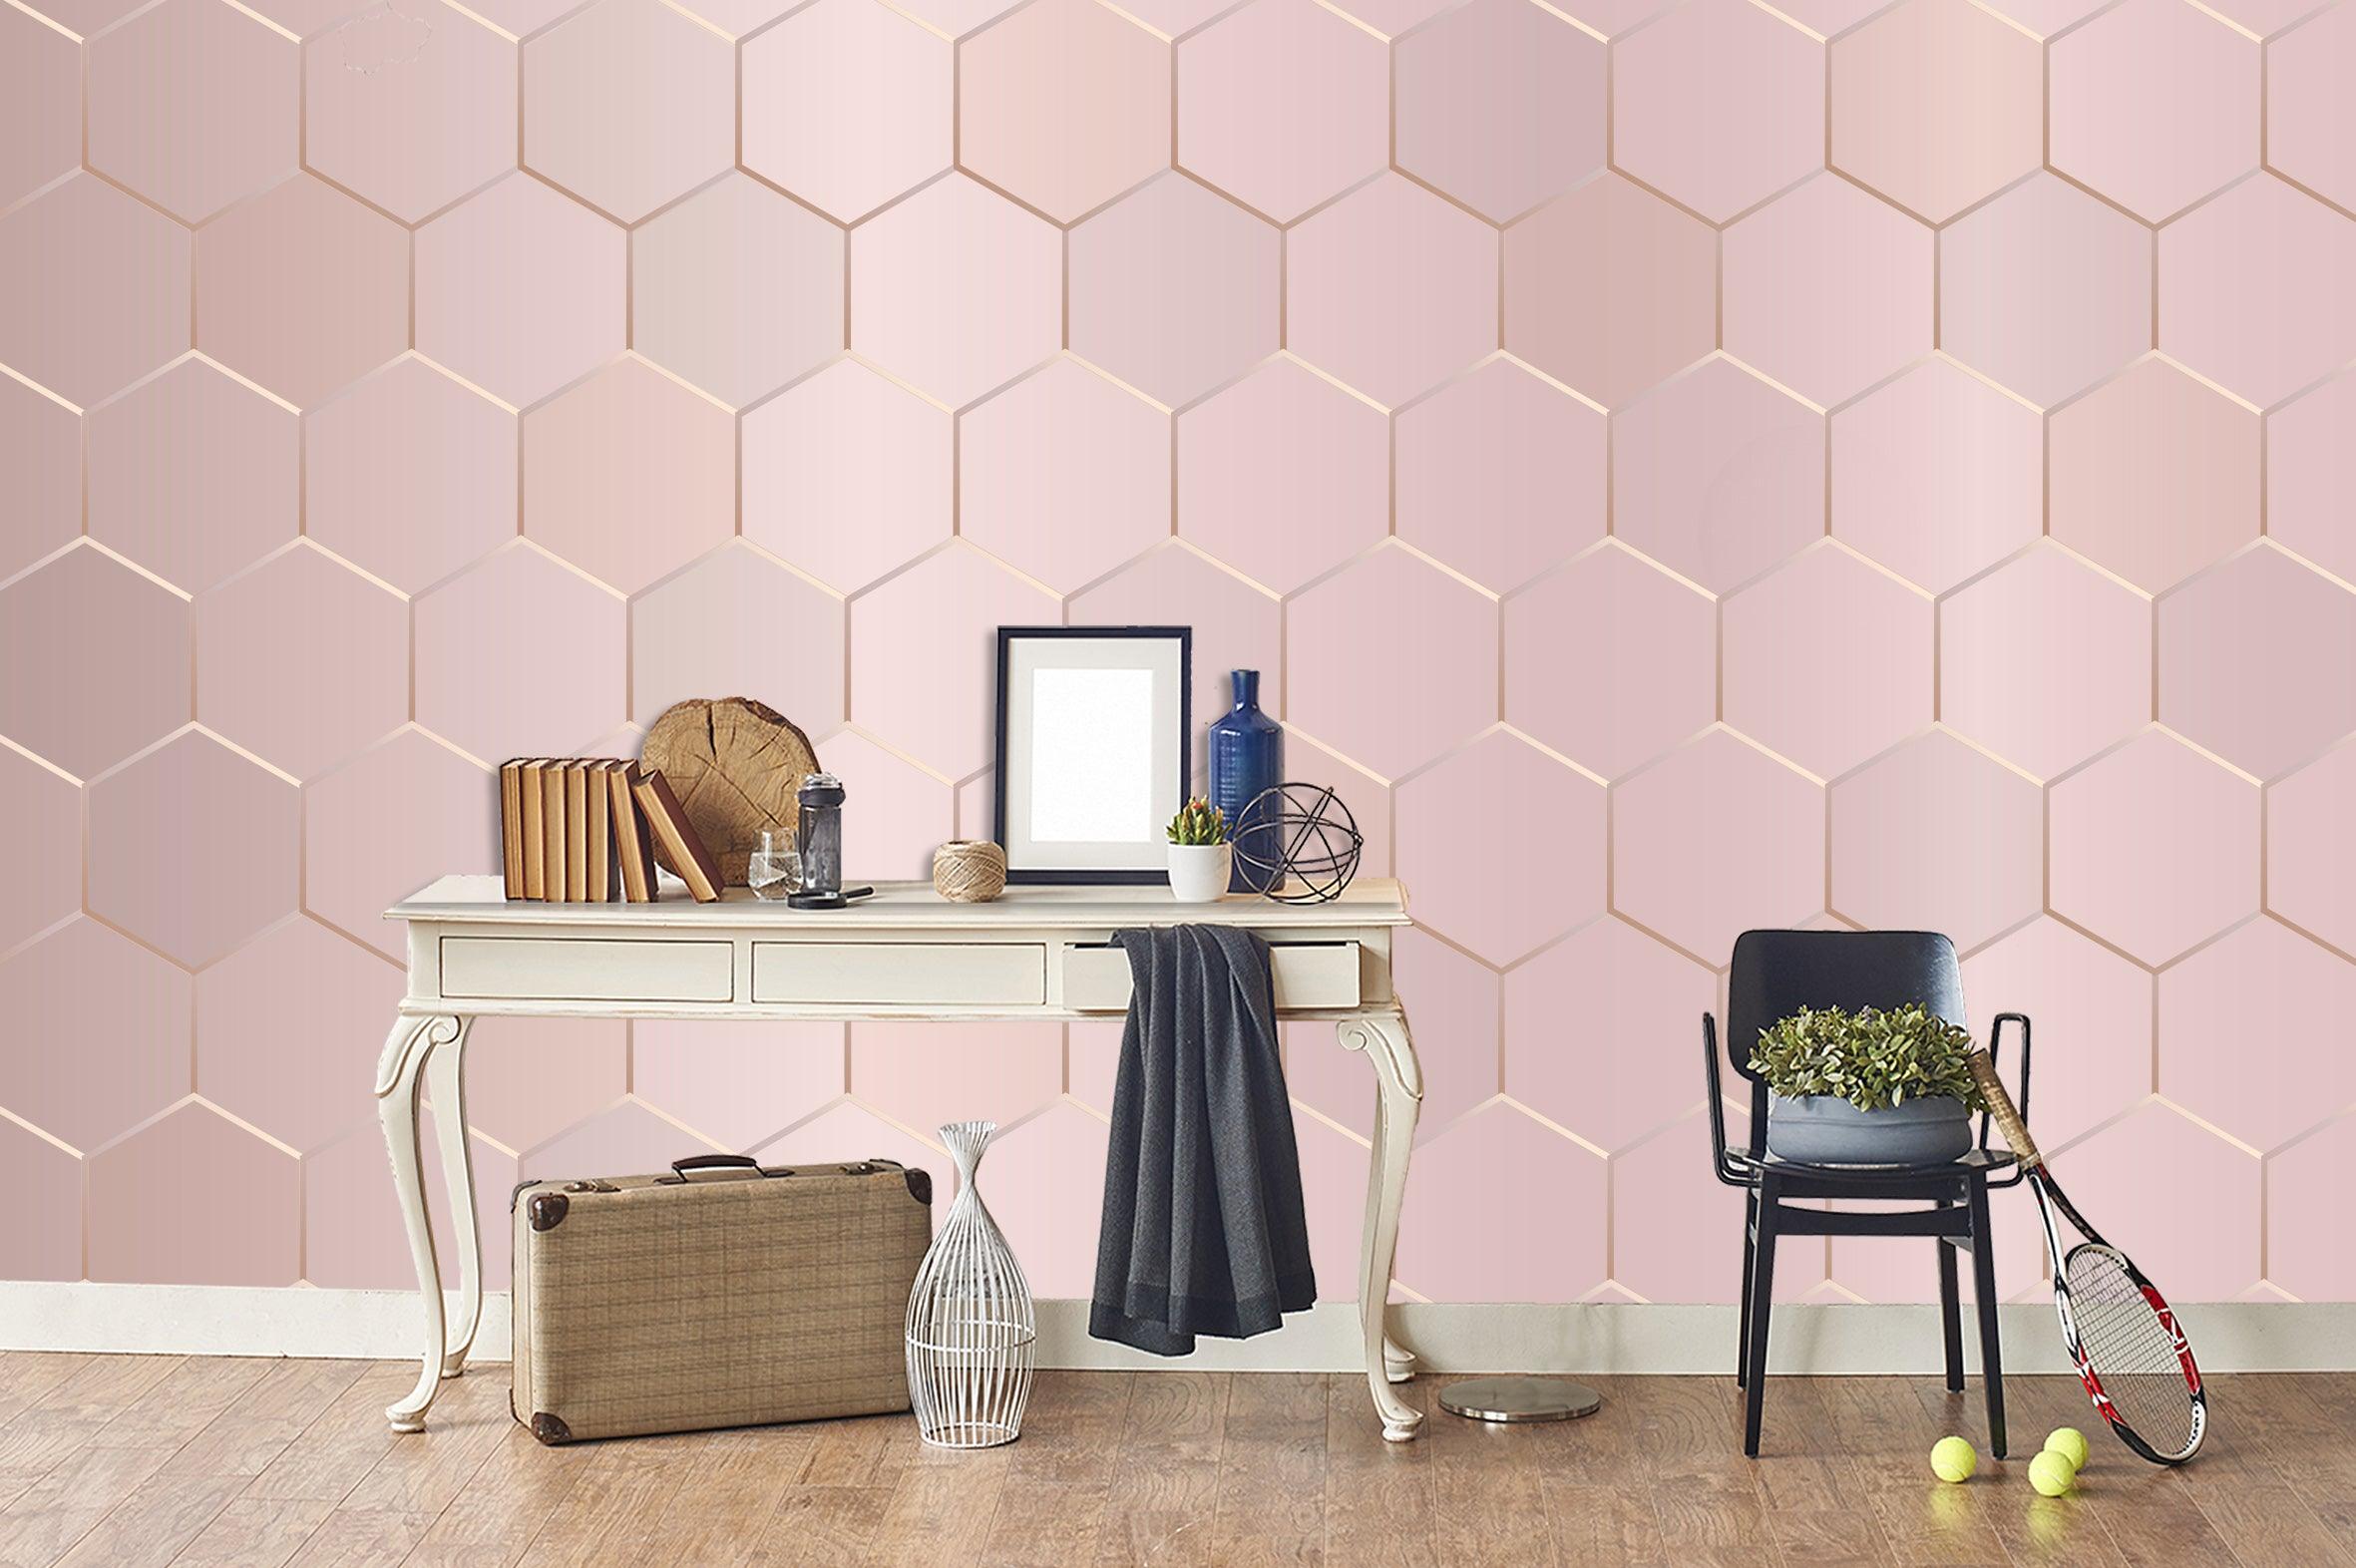 3D Pink Hexagon Arrangement Wall Mural Wallpaper 07- Jess Art Decoration